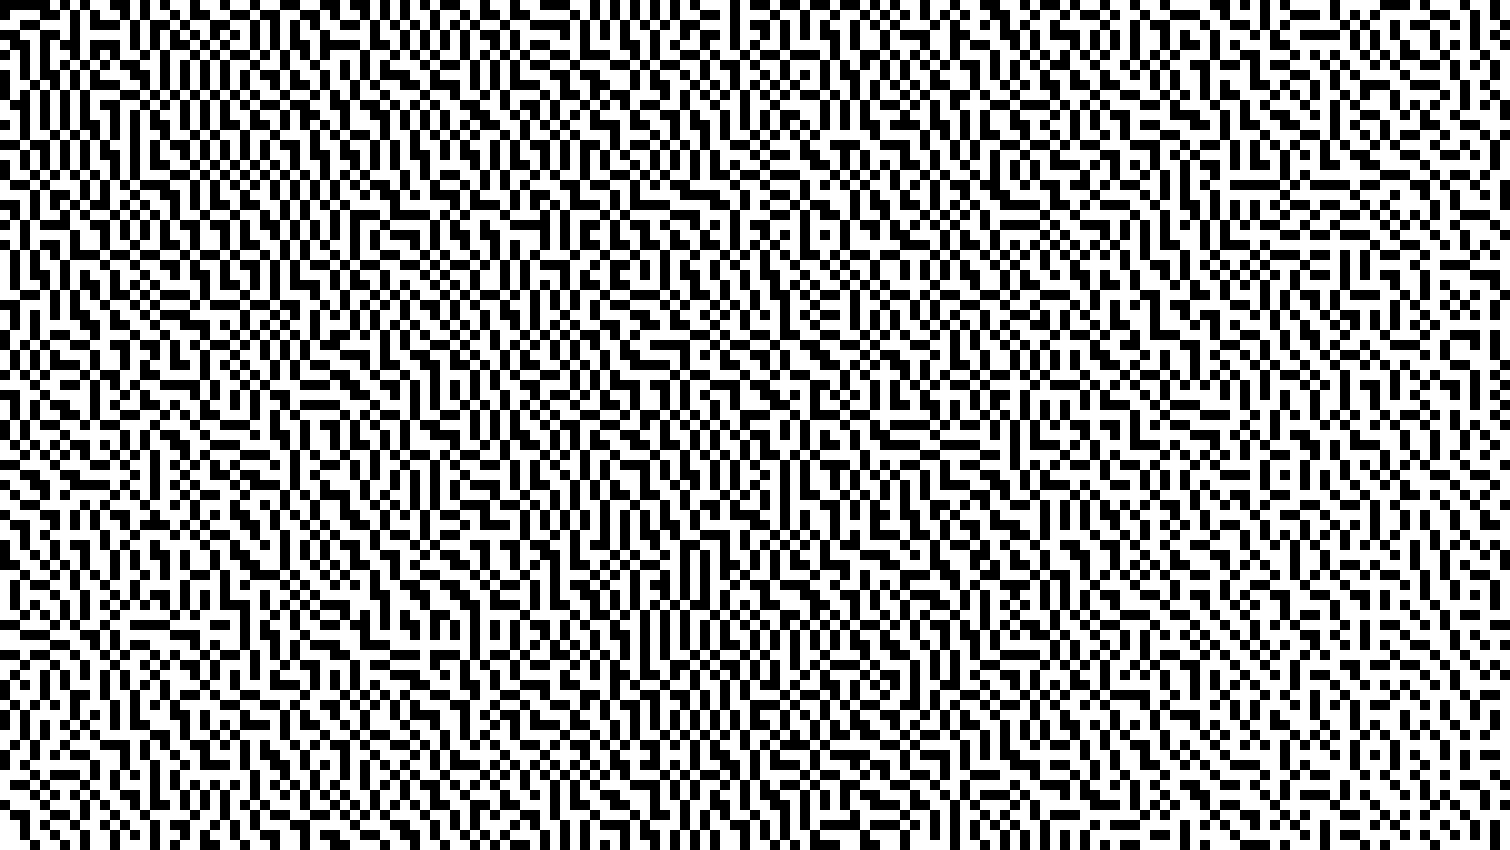 Pixelkomposition PC093503 (Pixelkomposition) 